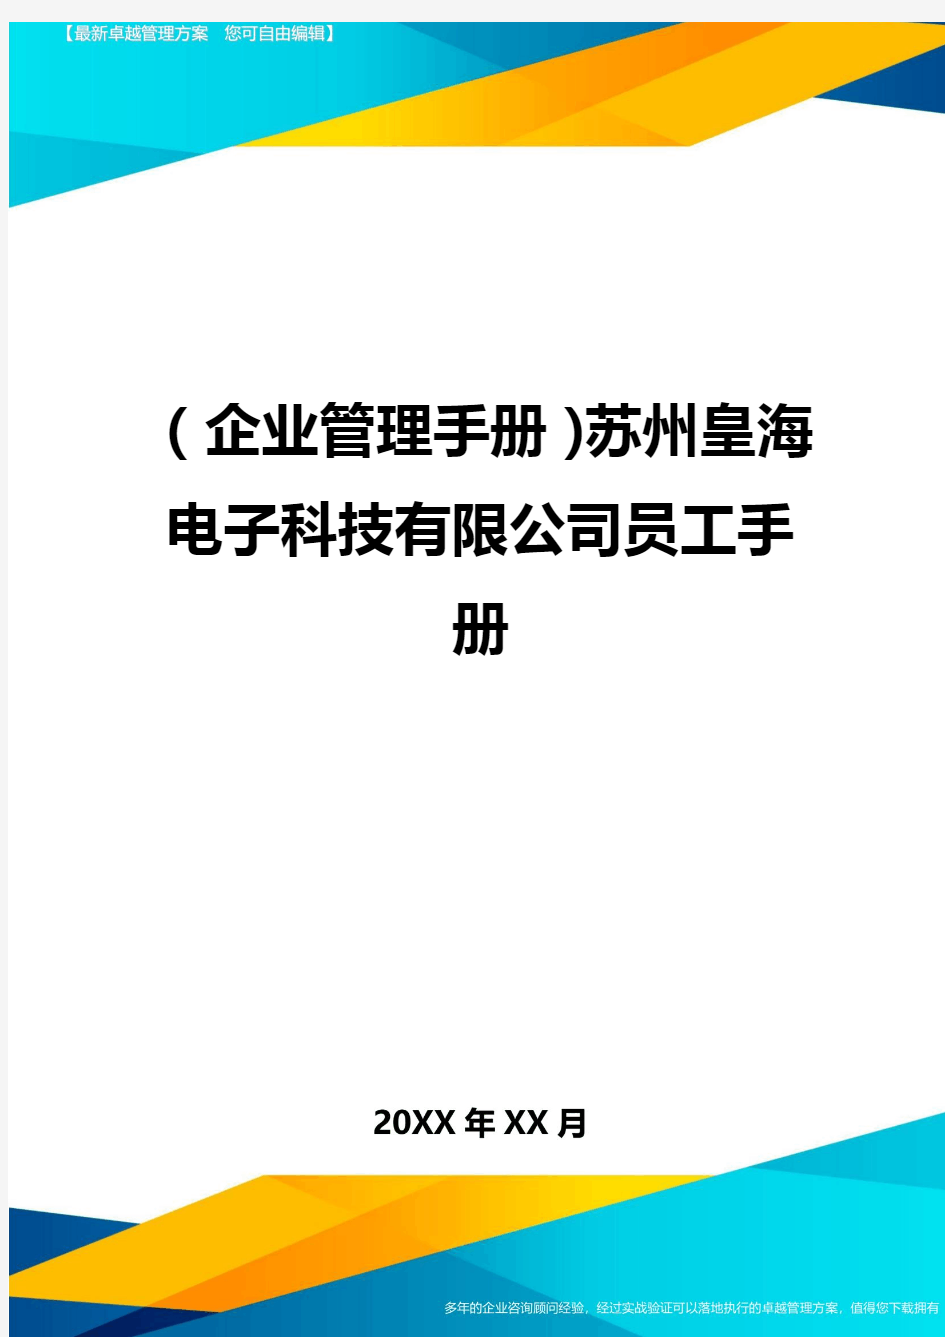 (企业管理手册)苏州皇海电子科技有限公司员工手册